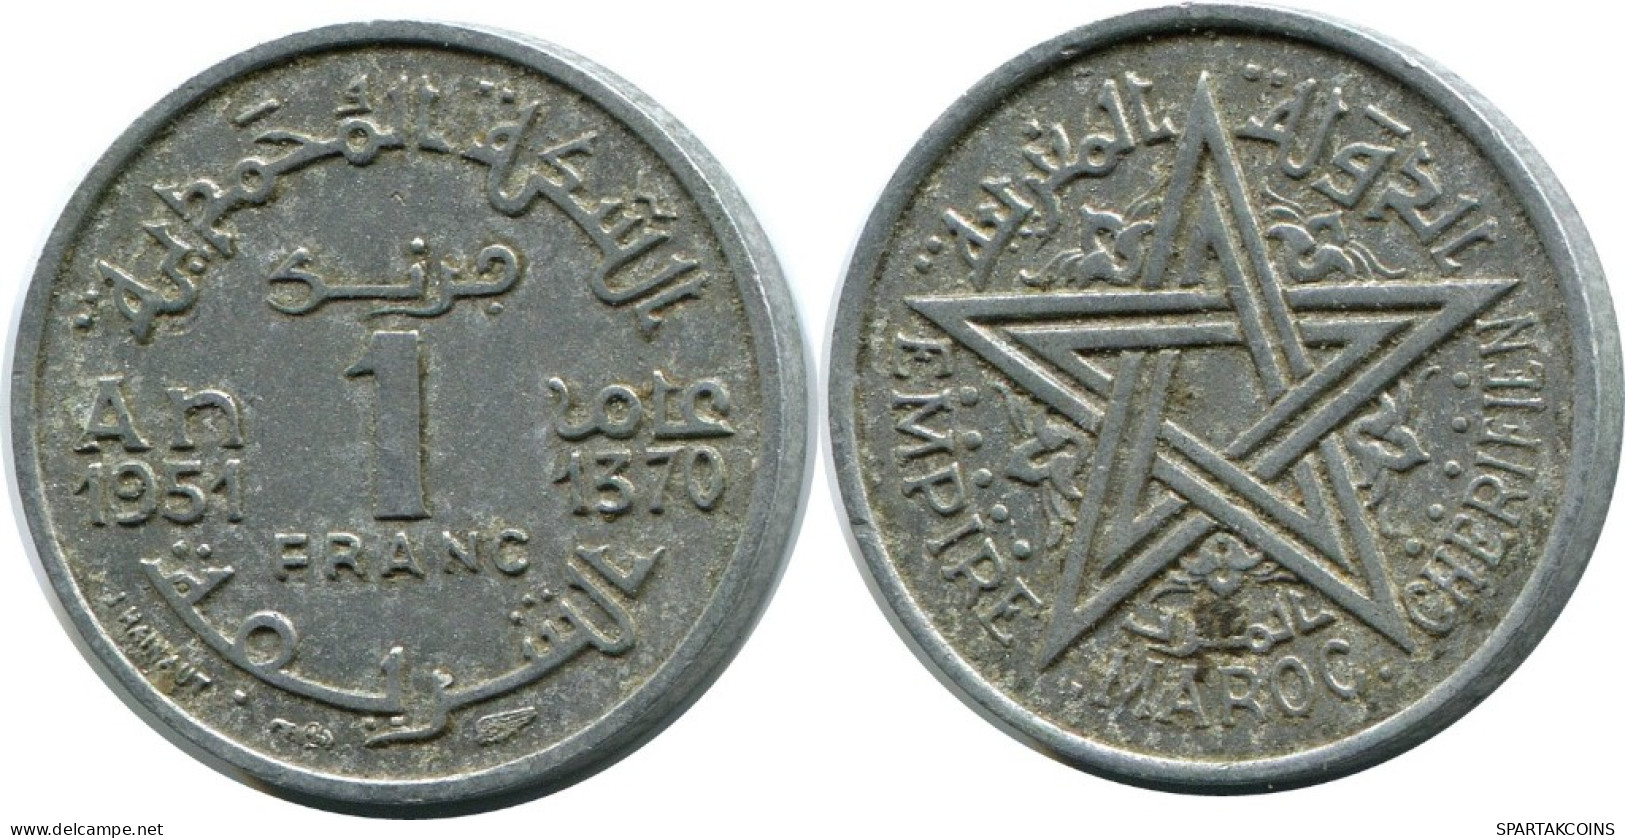 1 FRANC 1951 MOROCCO Islamic Coin #AH695.3.U.A - Marocco